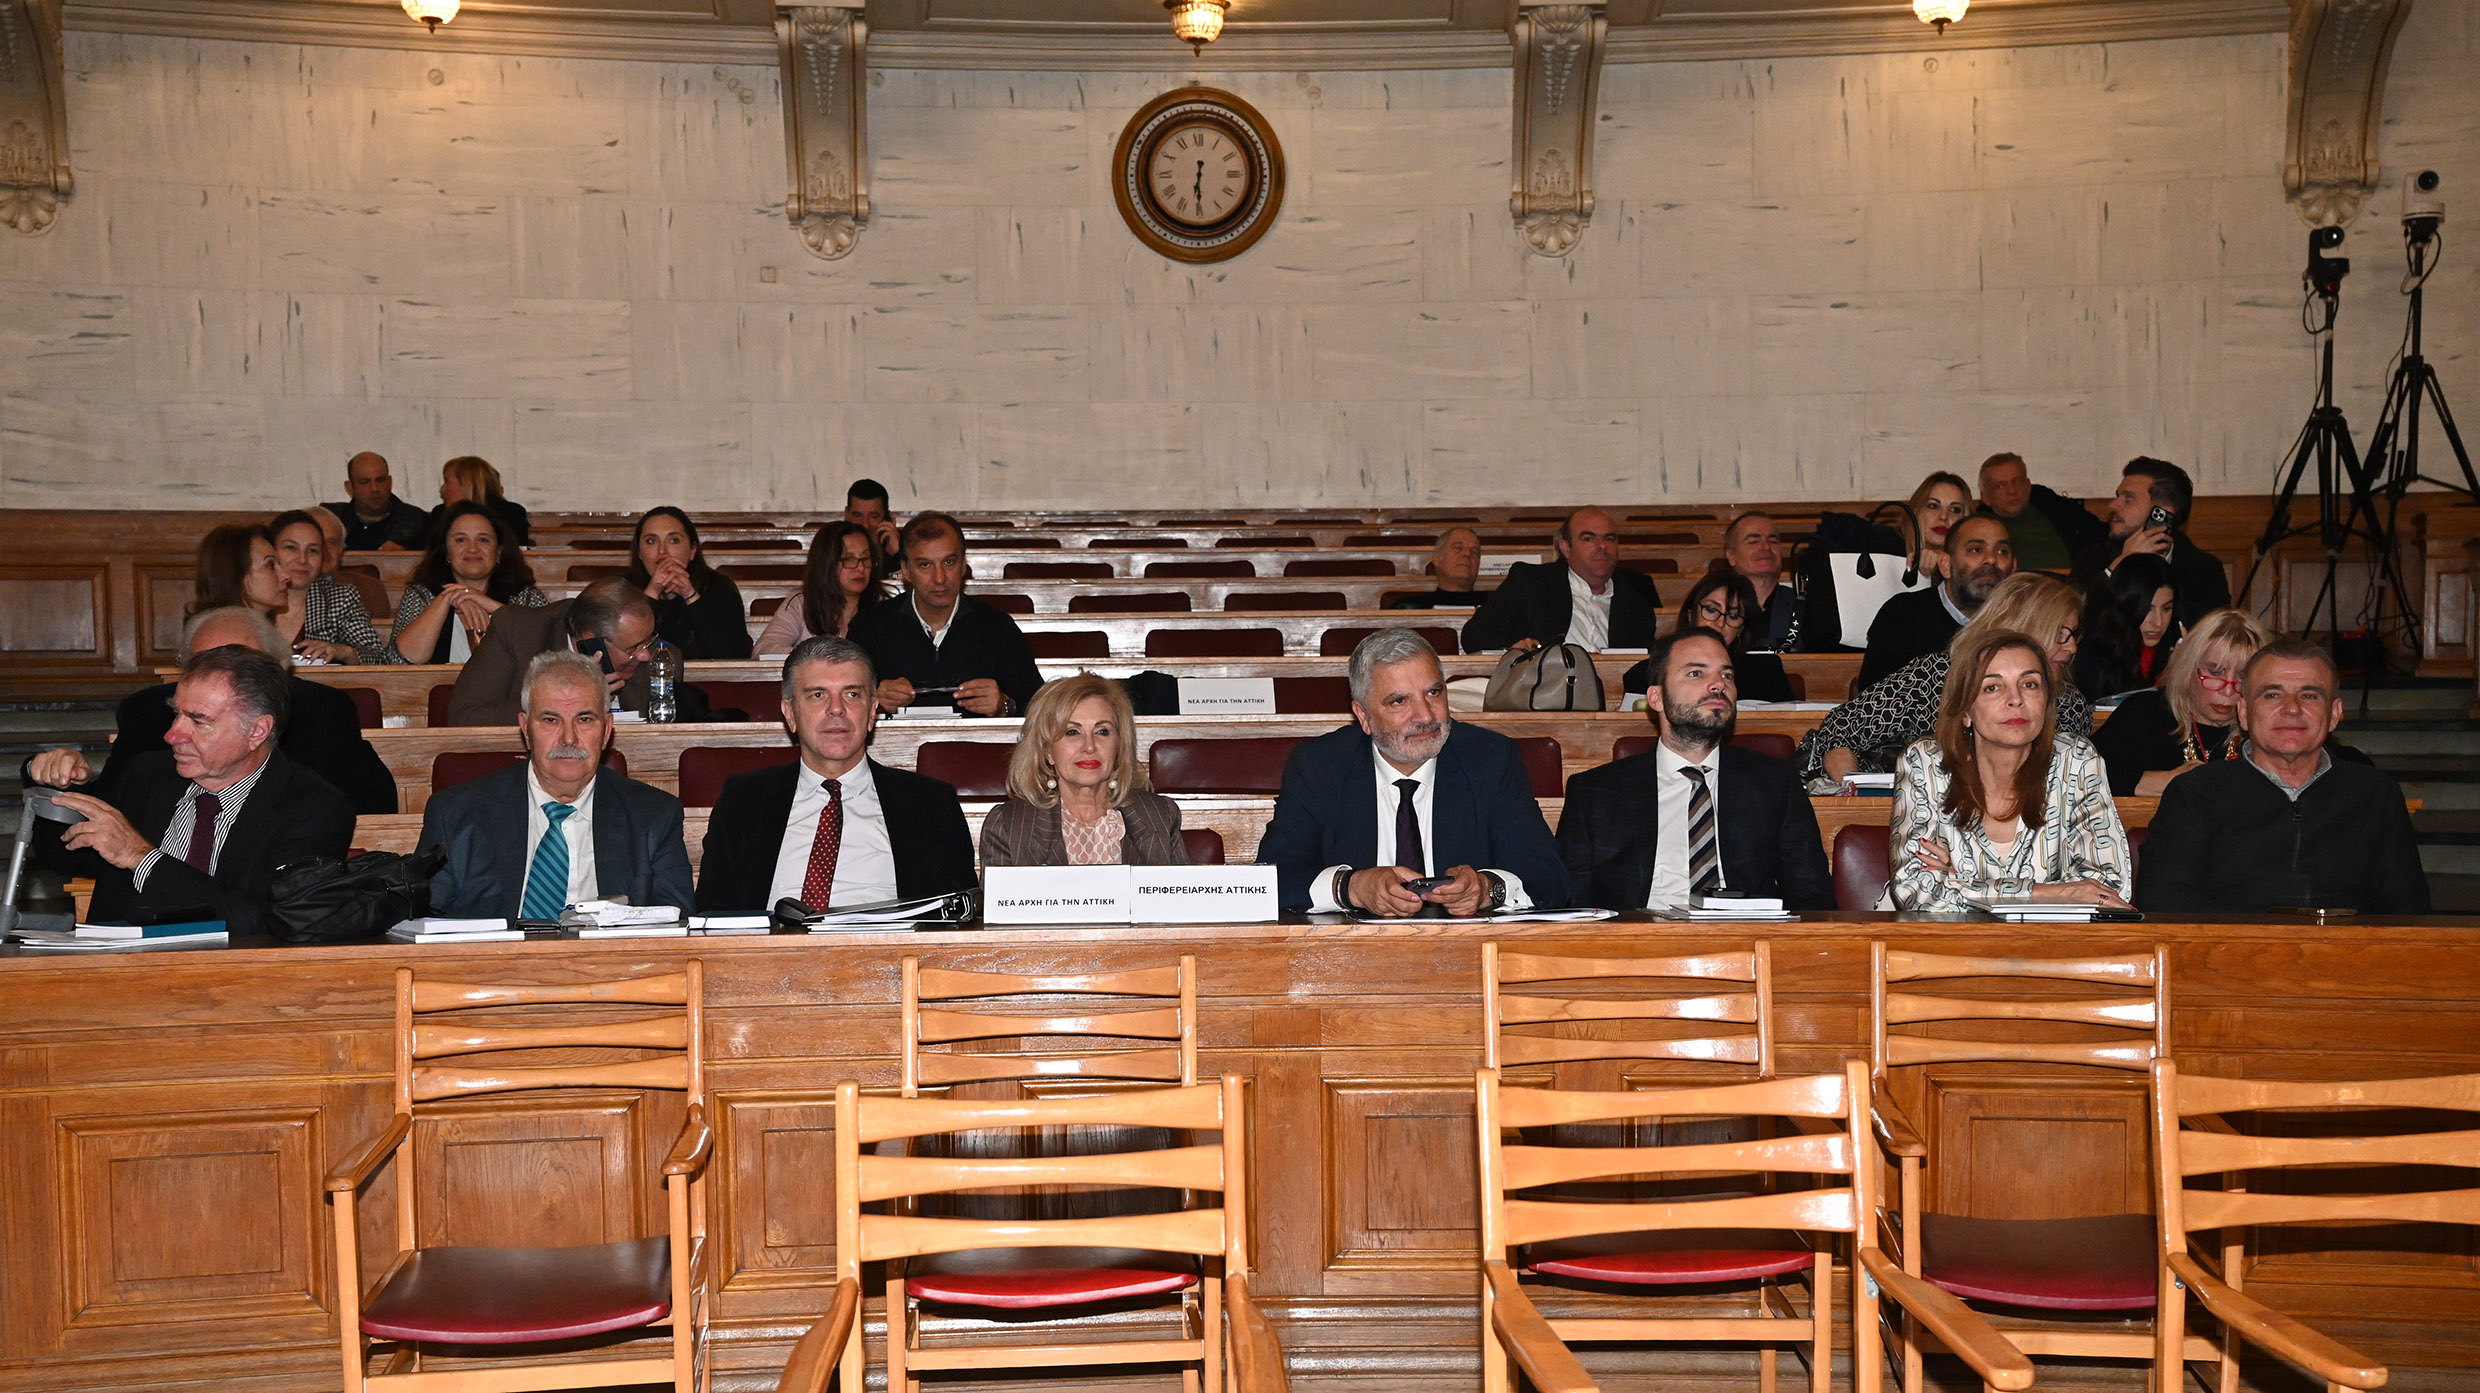 Με τον απολογισμό τετραετίας στην Παλαιά Βουλή ολοκληρώθηκε η τελευταία συνεδρίαση του Περιφερειακού Συμβουλίου Αττικής